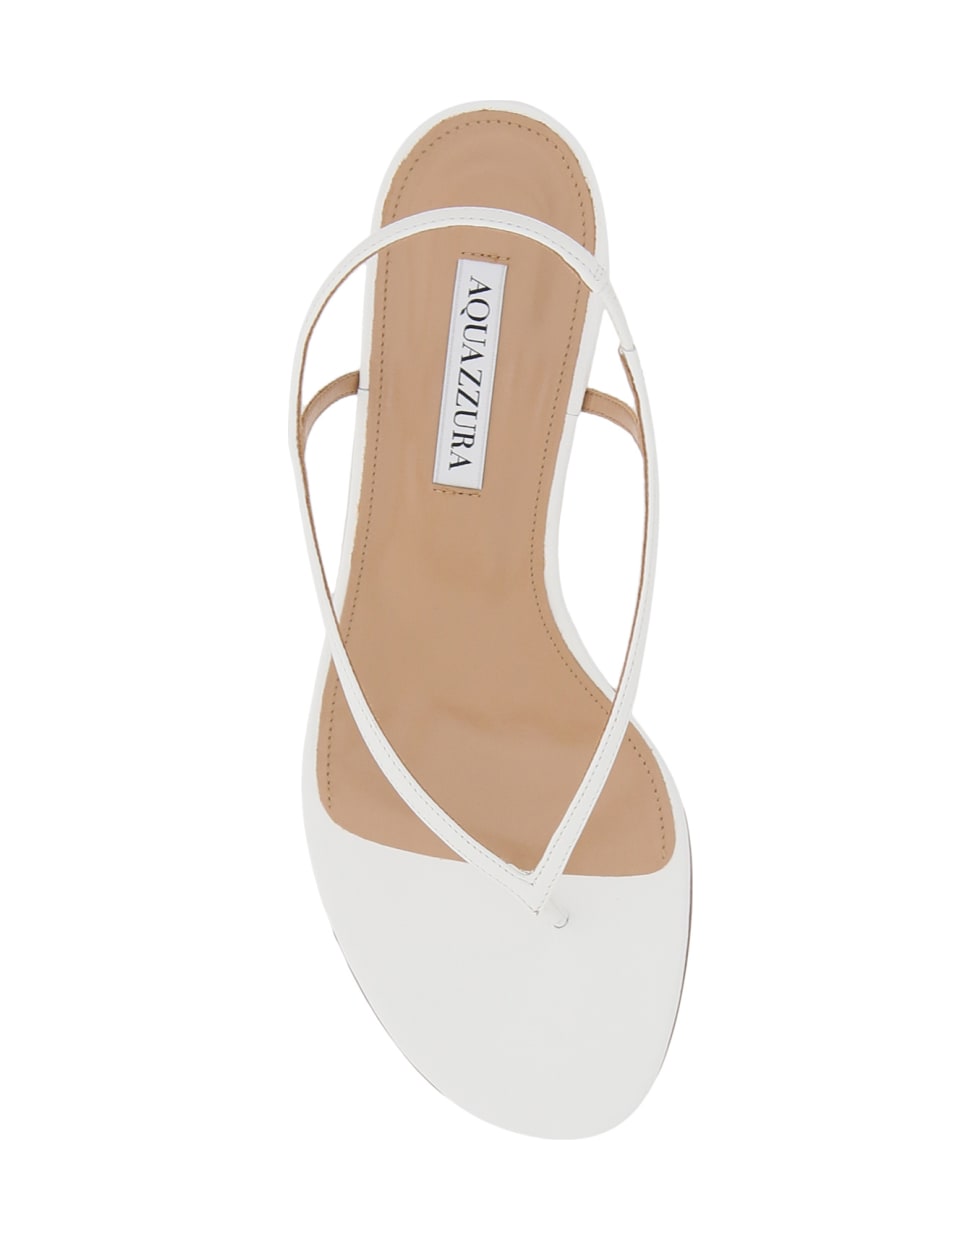 Aquazzura Divina Thong Sandals - WHITE (White)